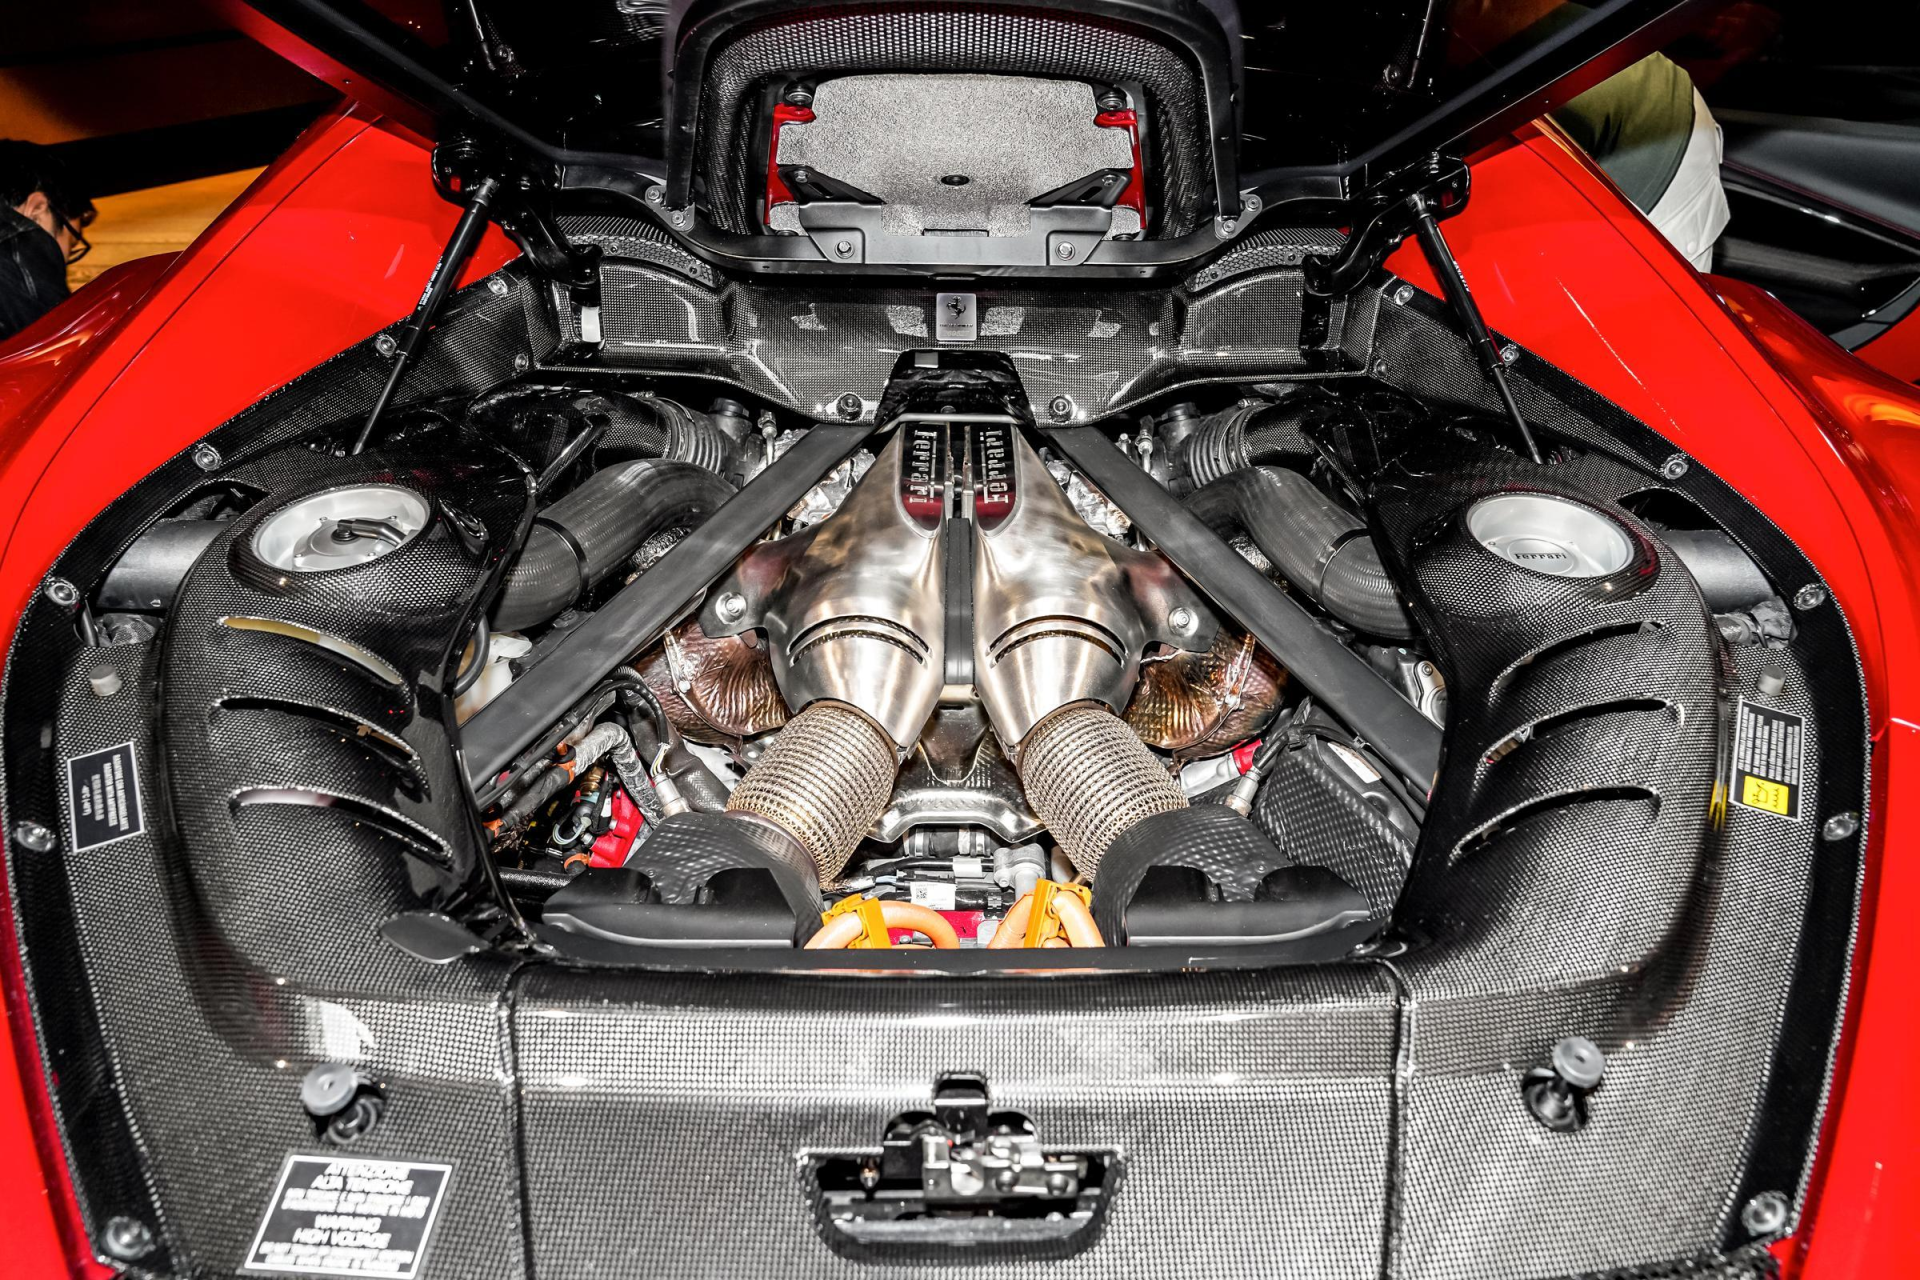 296 gtb:法拉利首款搭载v6发动机的量产超跑,f1技术下放的产物?